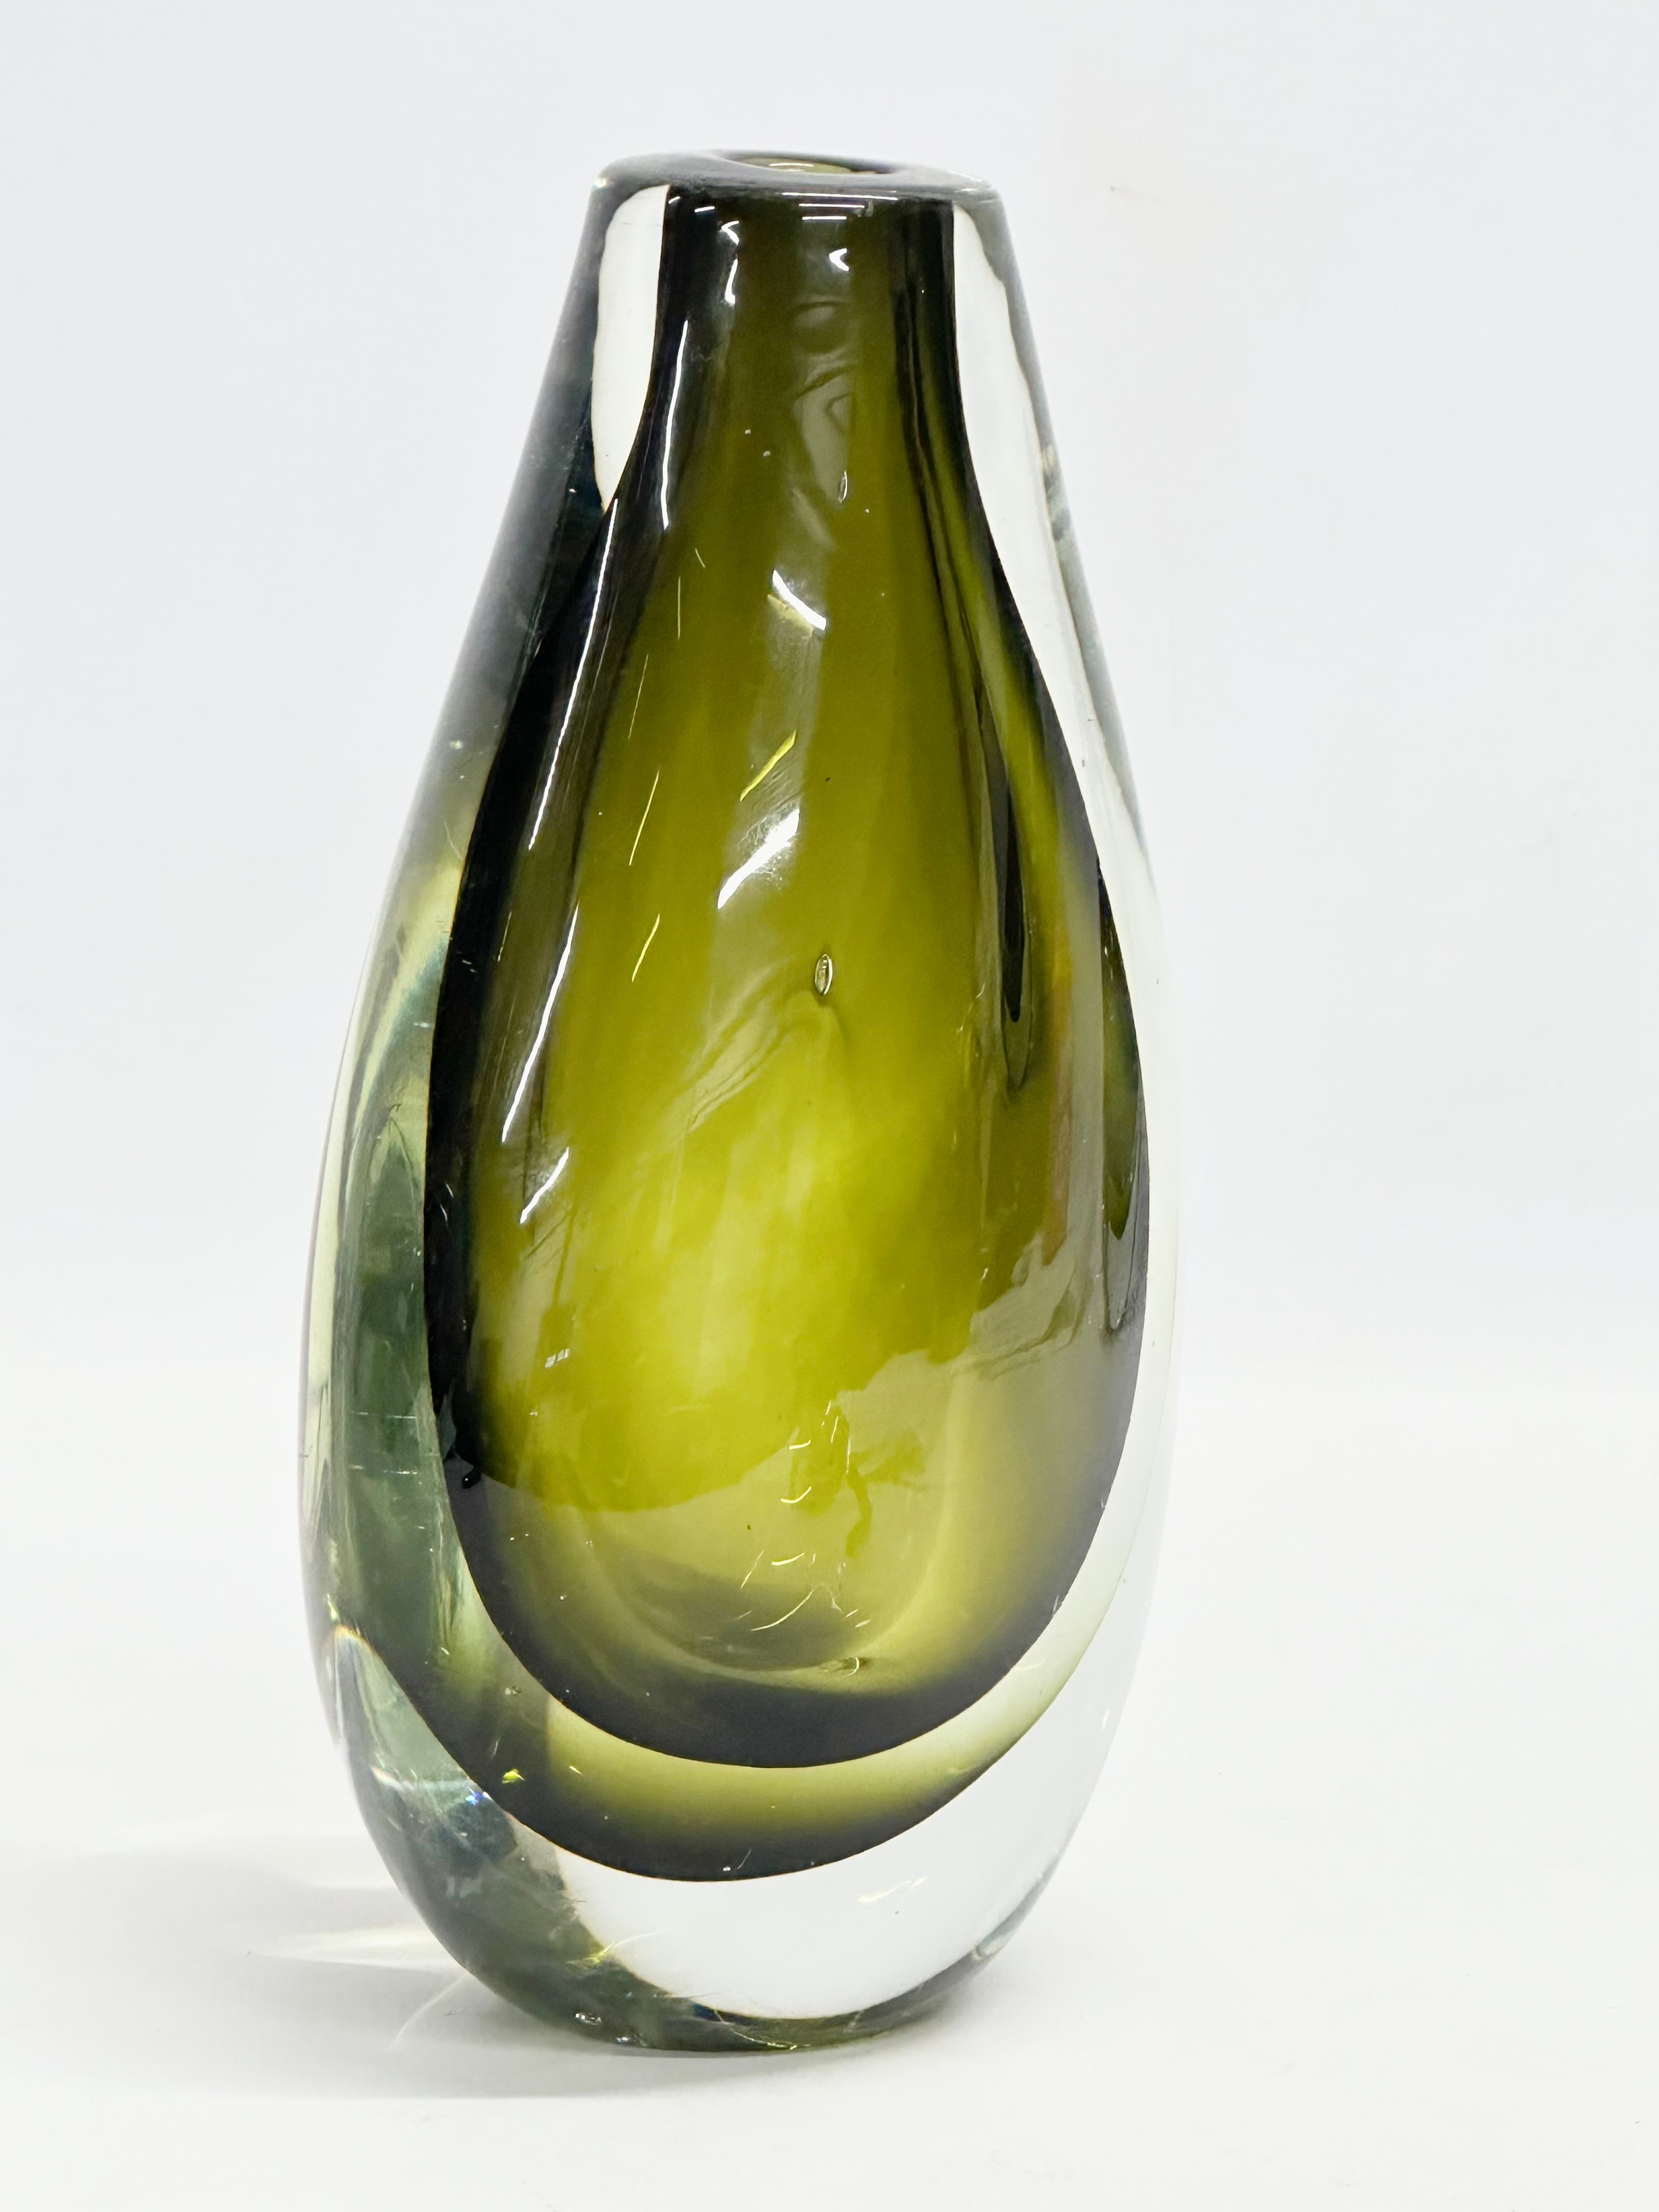 A Murano Sommerso Glass vase designed by Flavio Poli for Seguso Vetri d'Arte. 12x21cm - Image 4 of 5